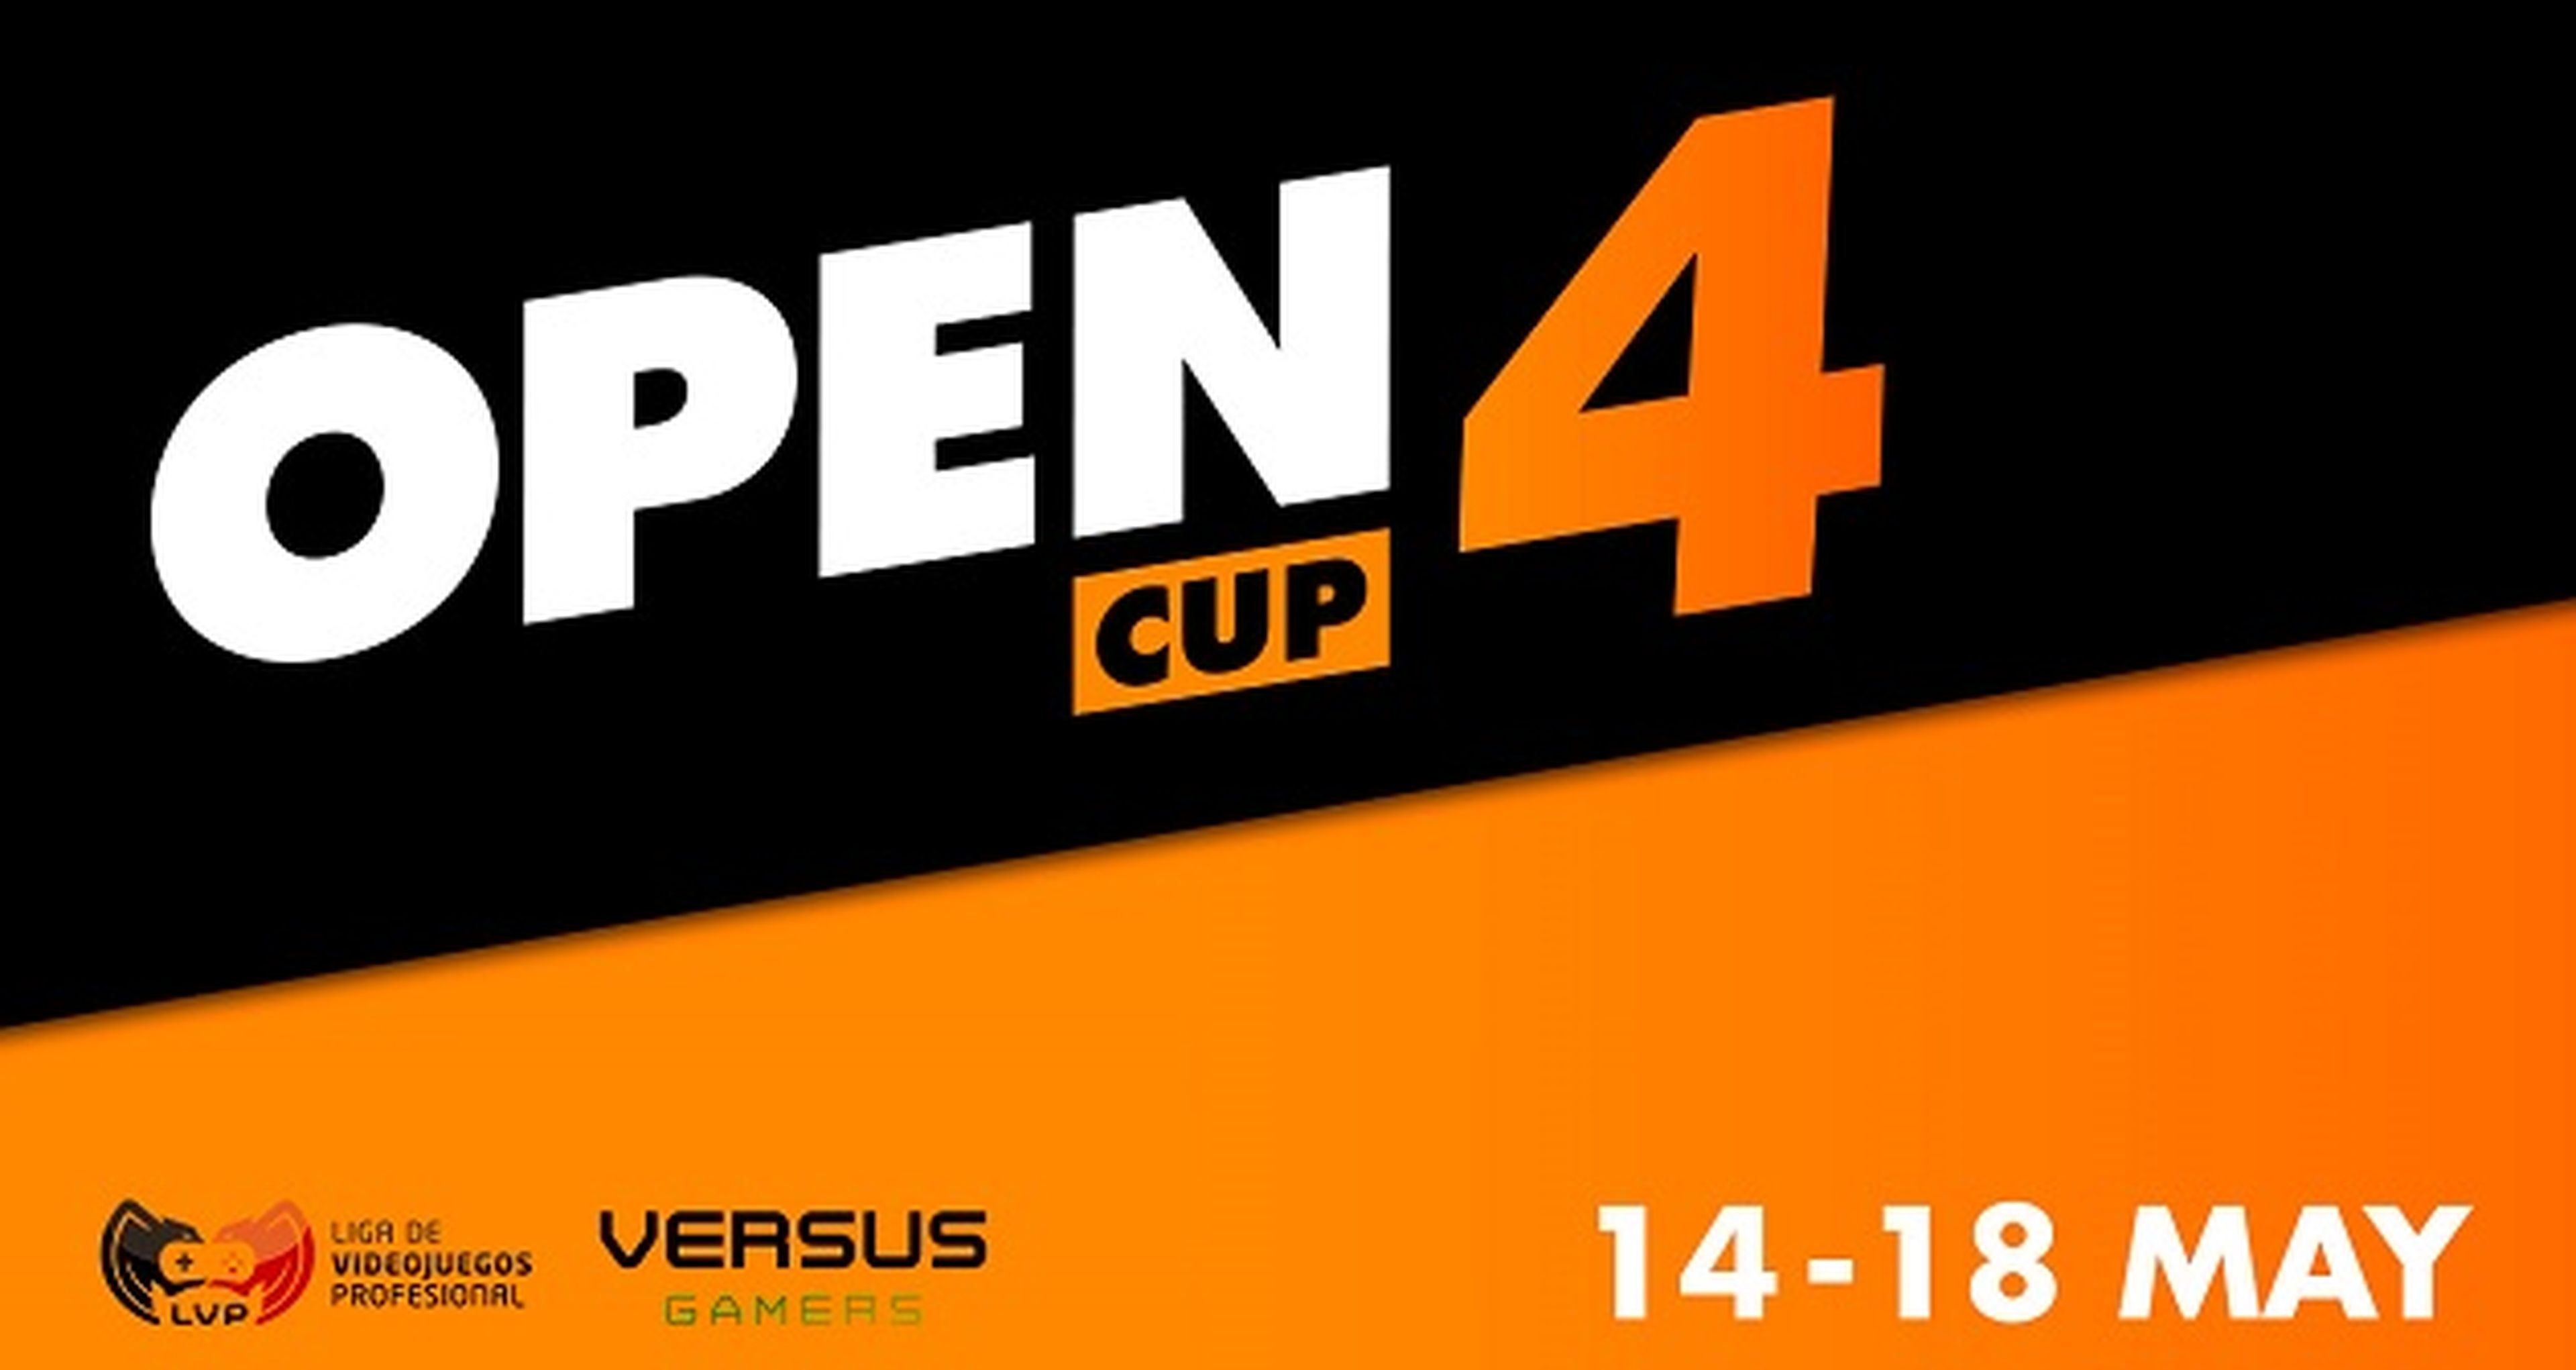 Comprueba tu nivel con la Open Cup 4 del 14 al 18 de mayo